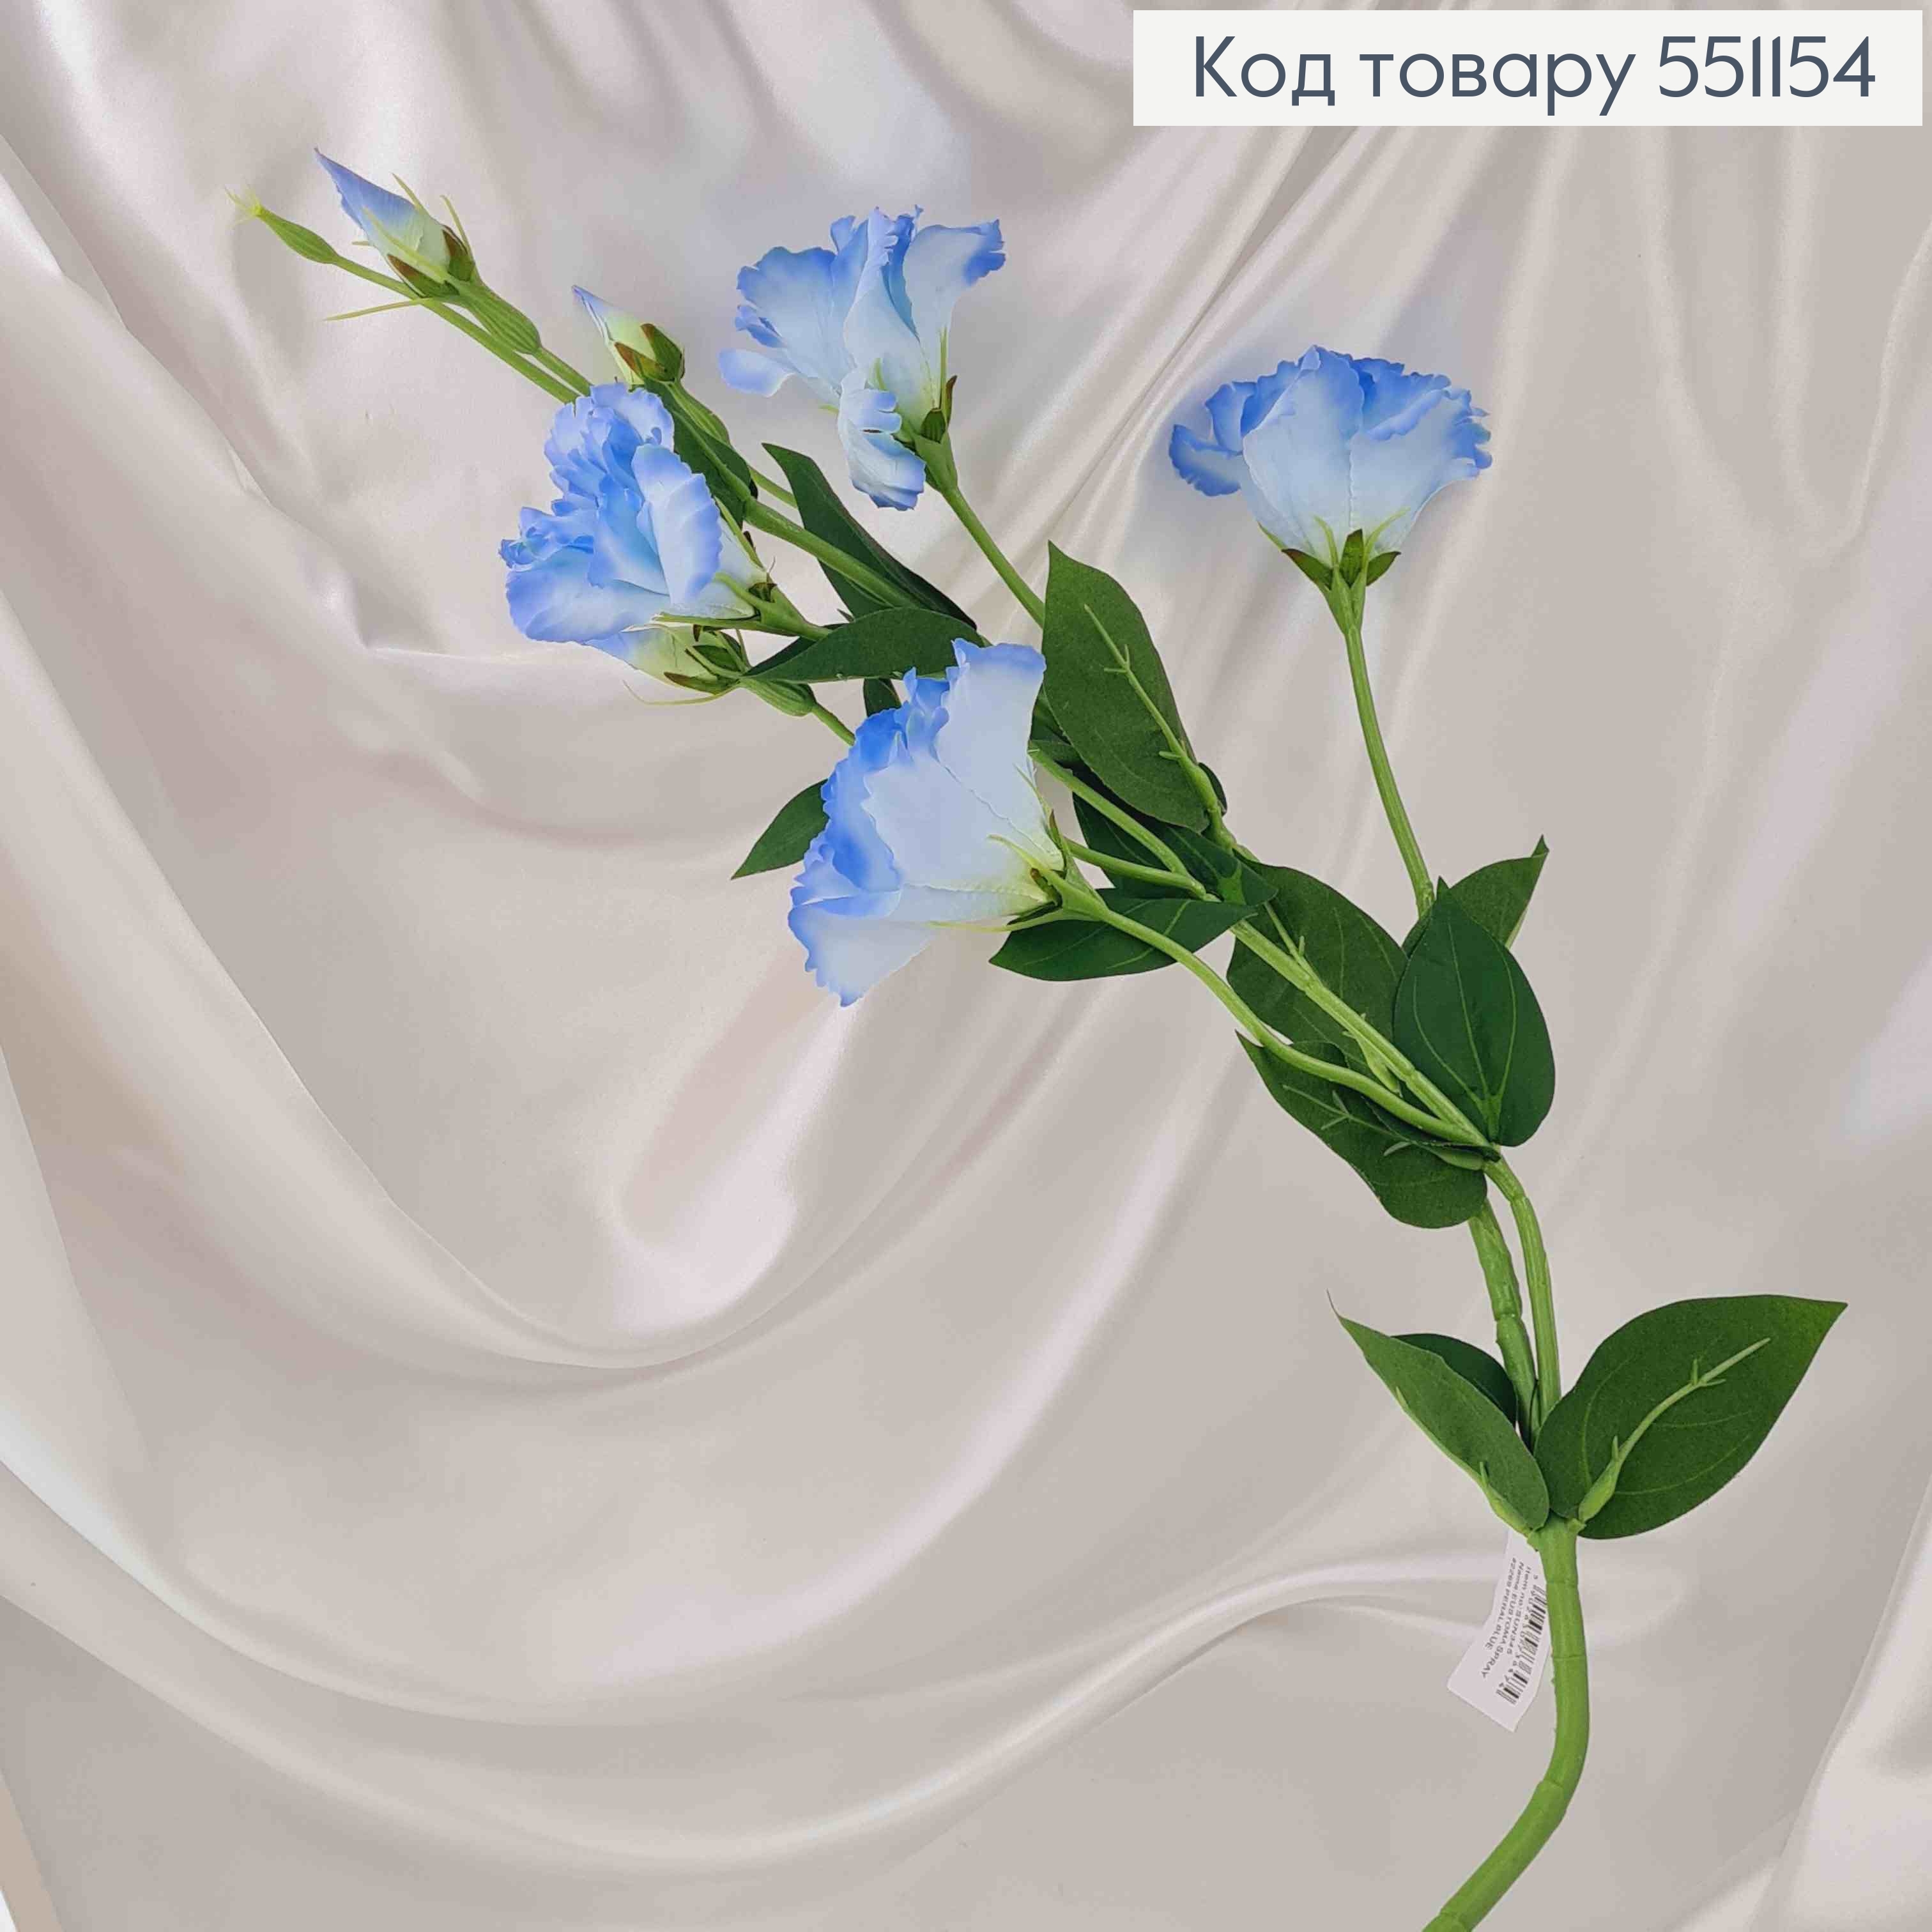 Искусственный цветок Эустомы, ГОЛУБА, ОМБРЭ, 4 цветка + 3 бутона, на металлическом стержне, 82см 551154 фото 2